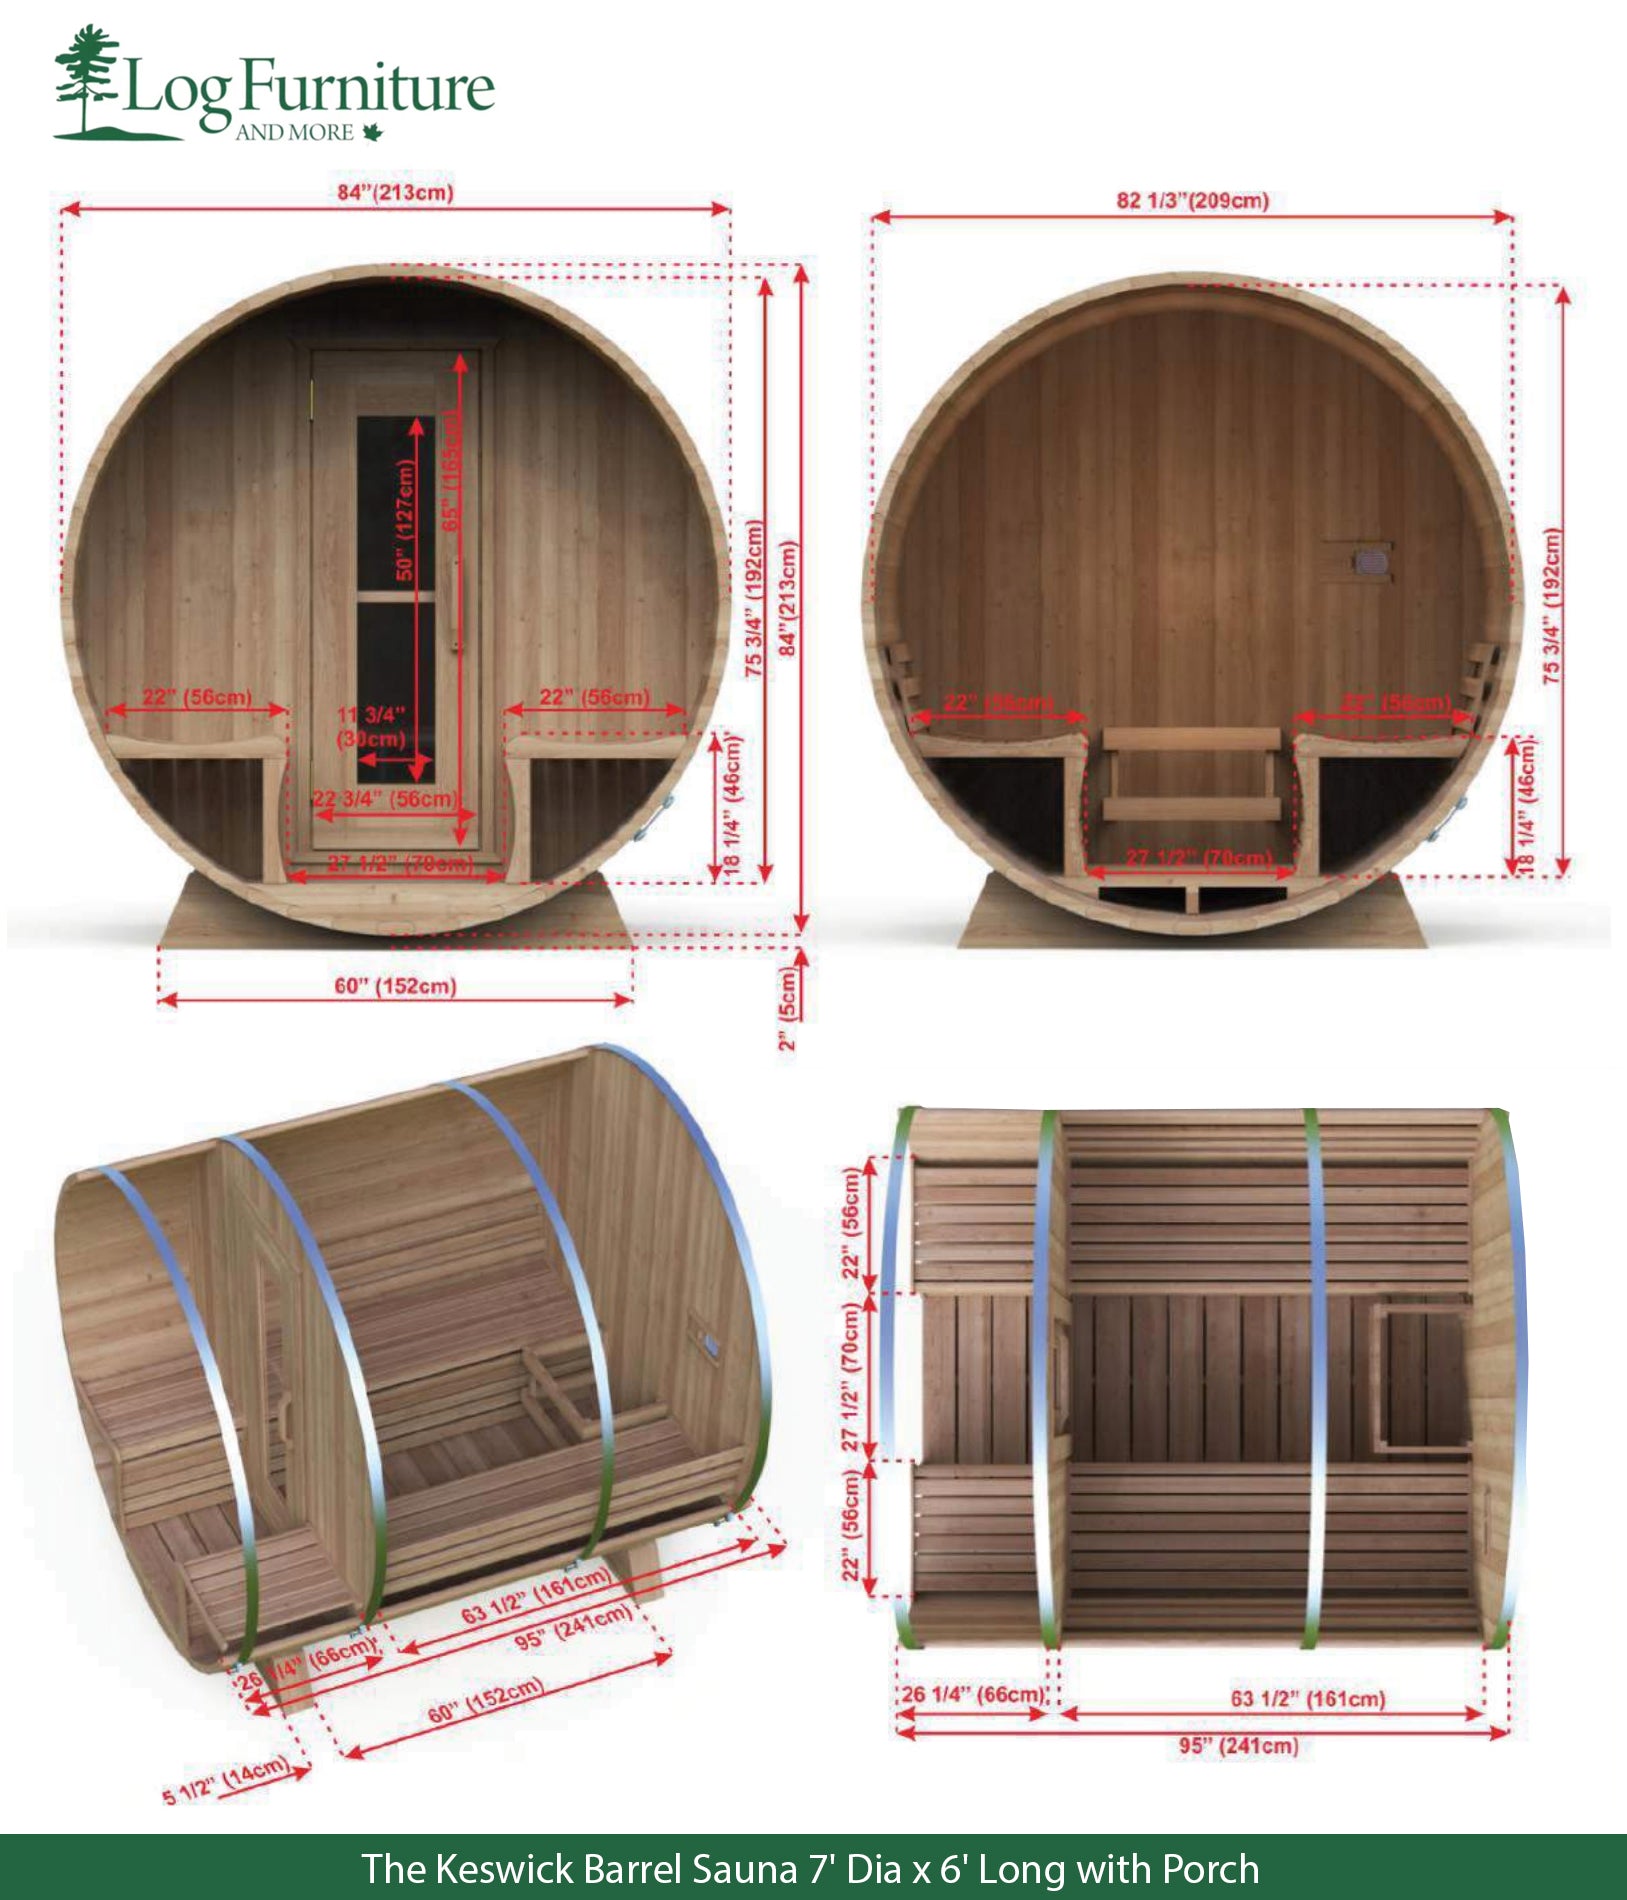 The Keswick Barrel Sauna 7' Dia x 6' Long with Porch